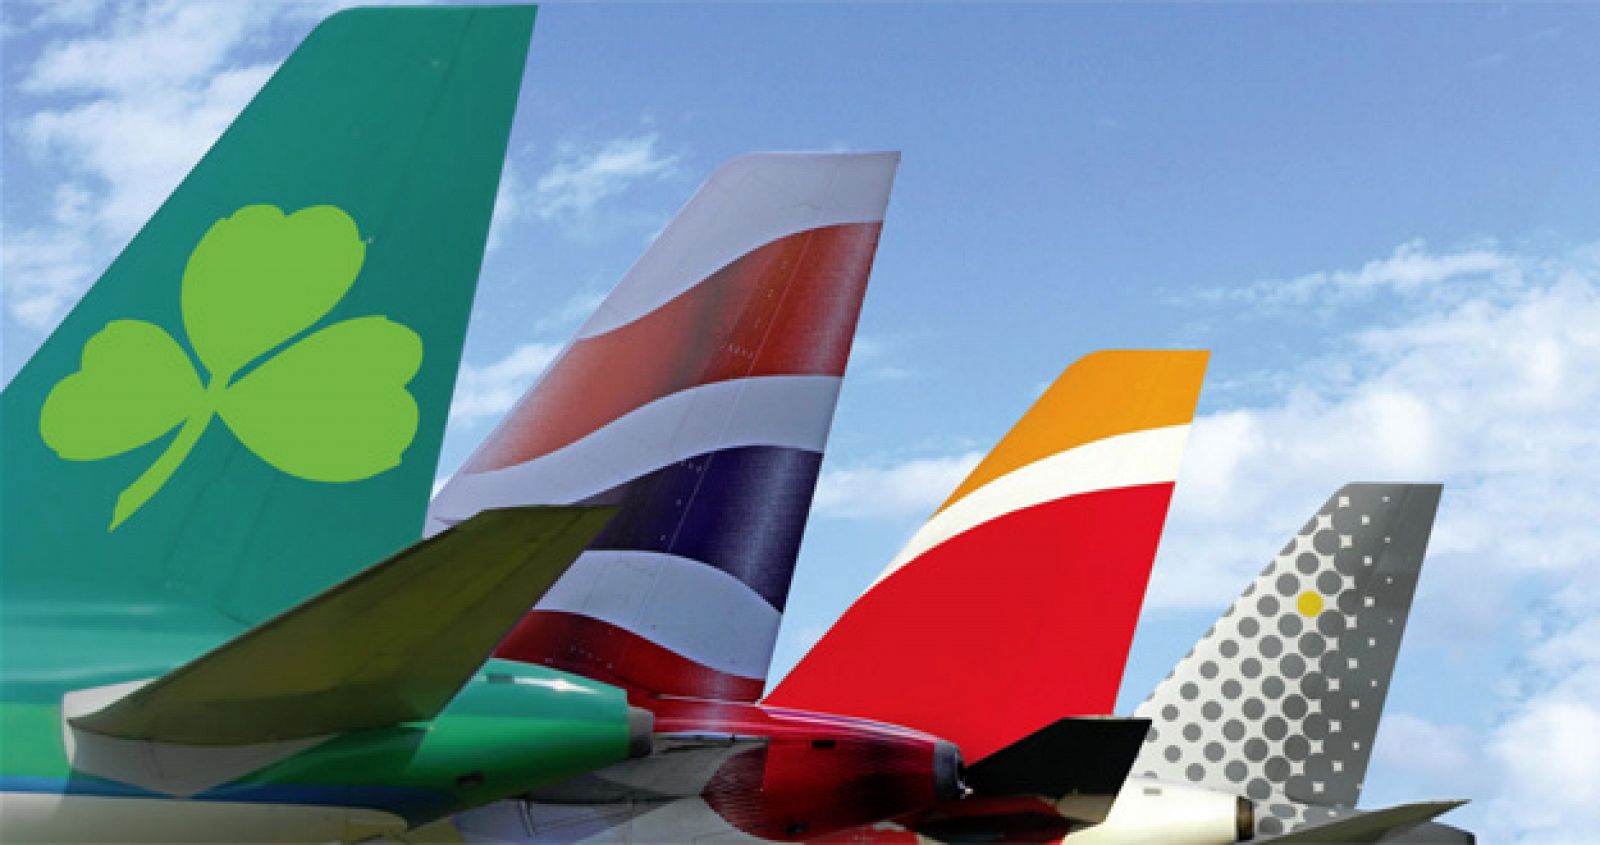 Los colores de Aer Lingus, British Airways, Iberia y Vueling